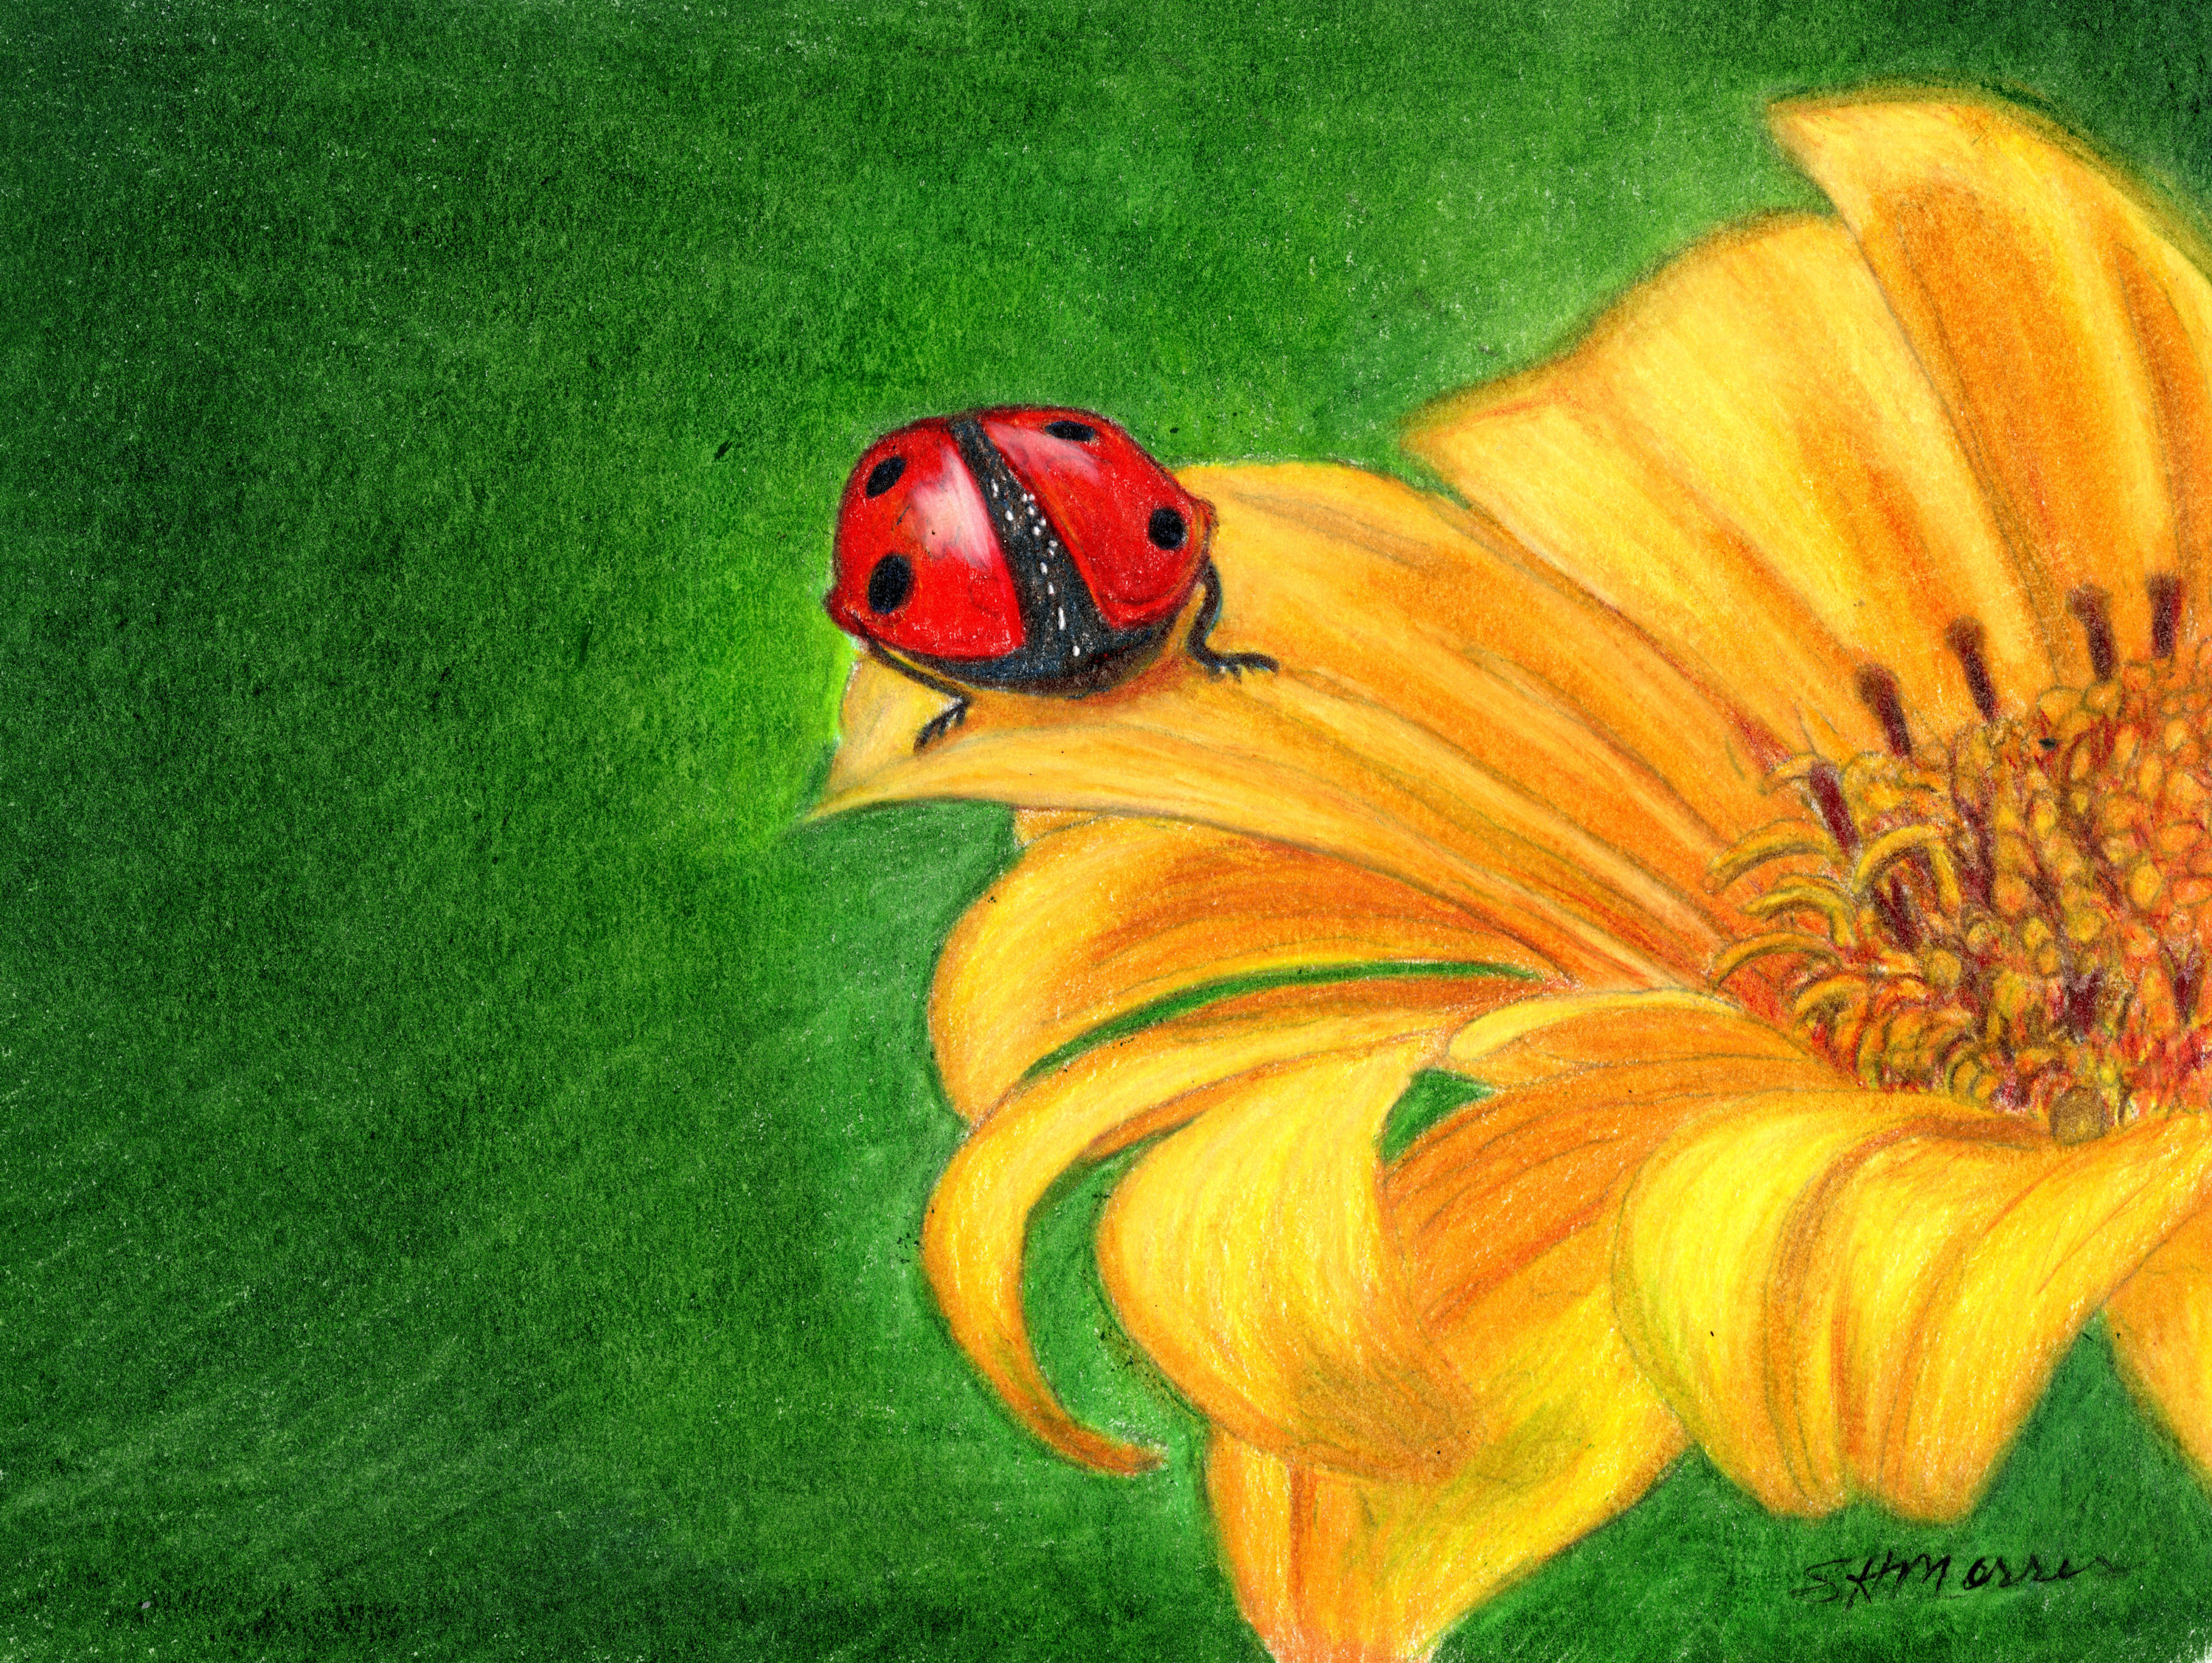 Ladybug on a lily dicv0o